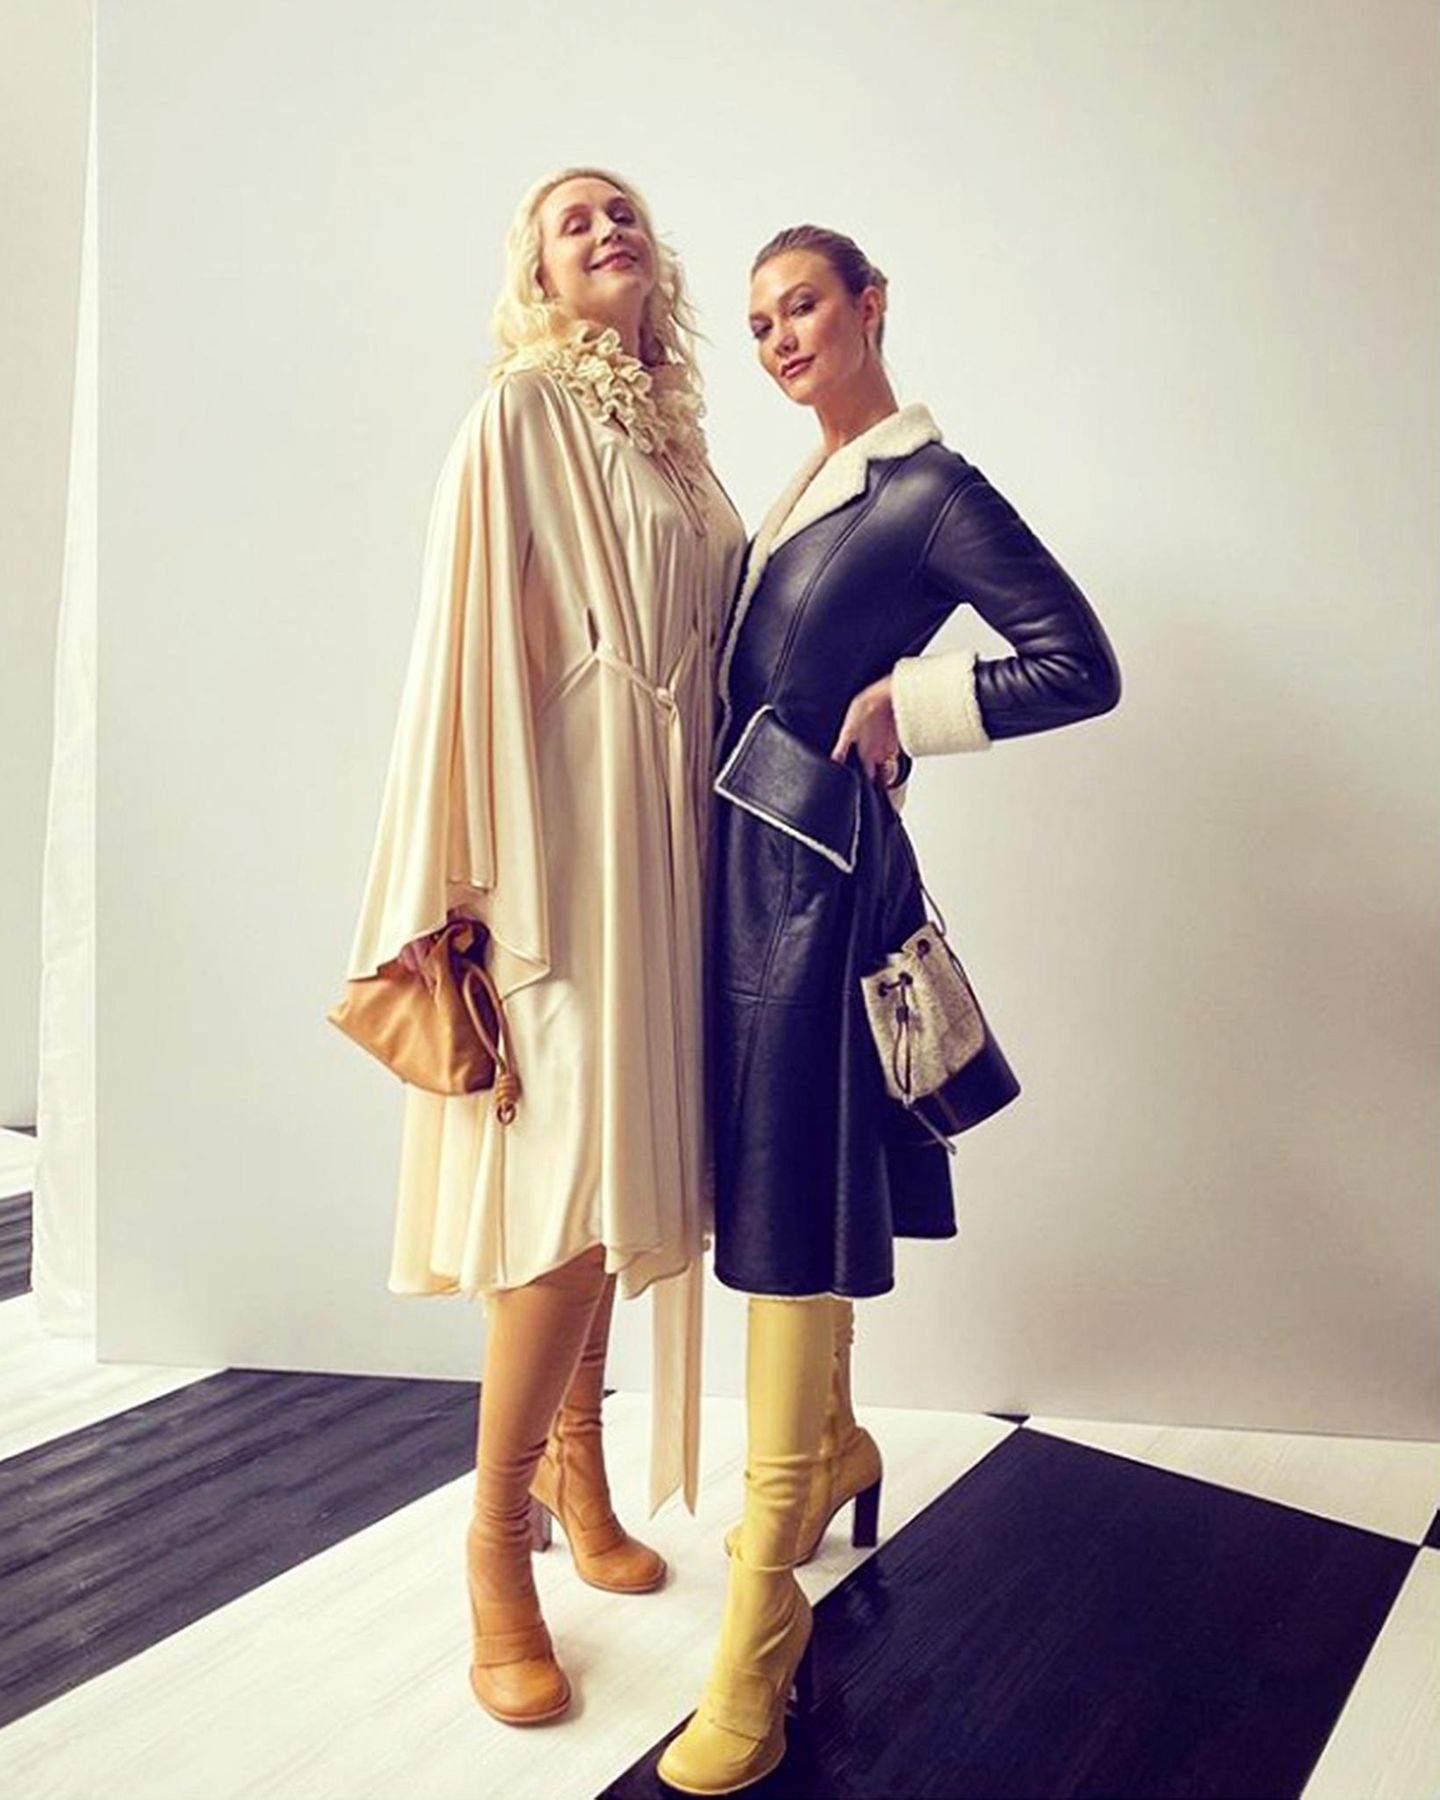 Groß trifft größer! Zusammen und die Absätze mit eingerechnet sind Gwendoline Christie (1,91 m)  und Karlie Kloss (1,88 m) um die 4 Meter groß. 4 Meter "göttliche Dekadenz" wie Society-Liebling Derek Blasberg sein Instagram-Foto kommentiert. Entstanden ist es während der Fashion-Week in Paris.